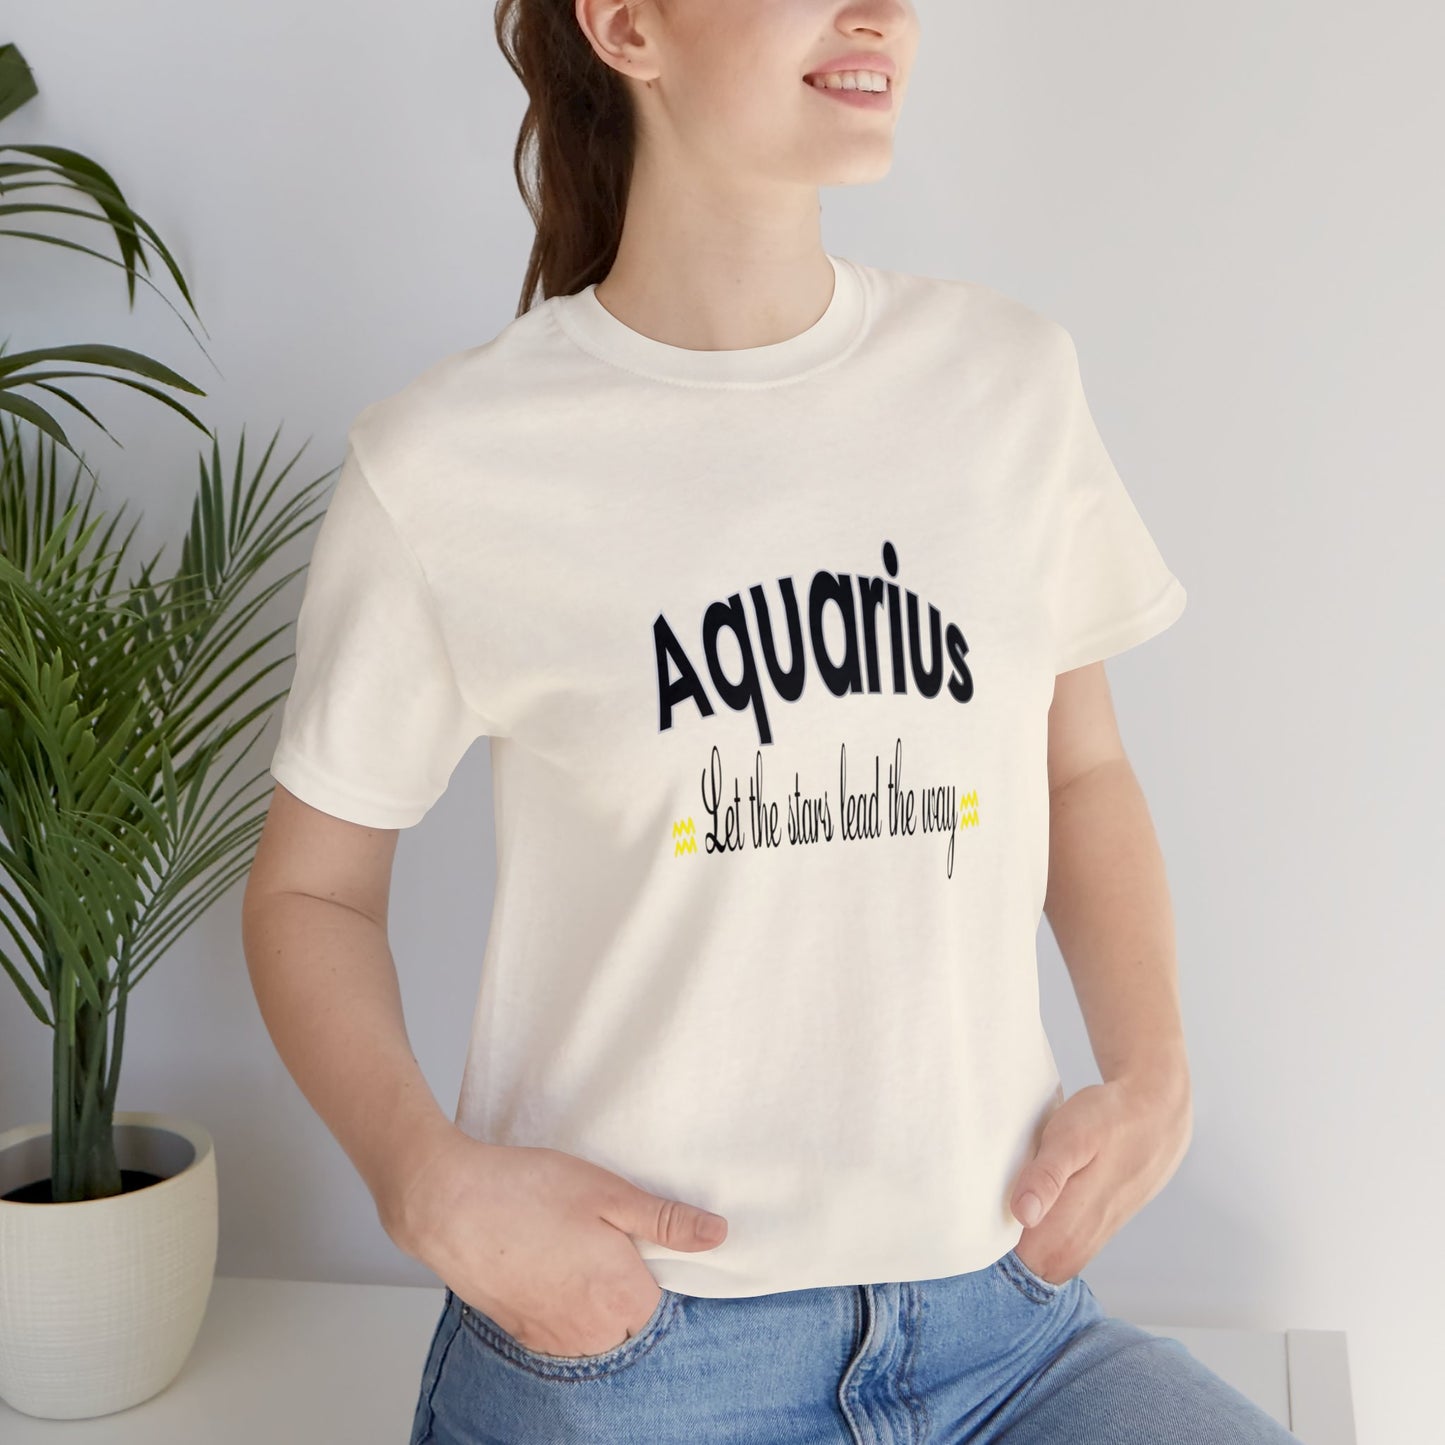 Aquarius T-Shirt Quote